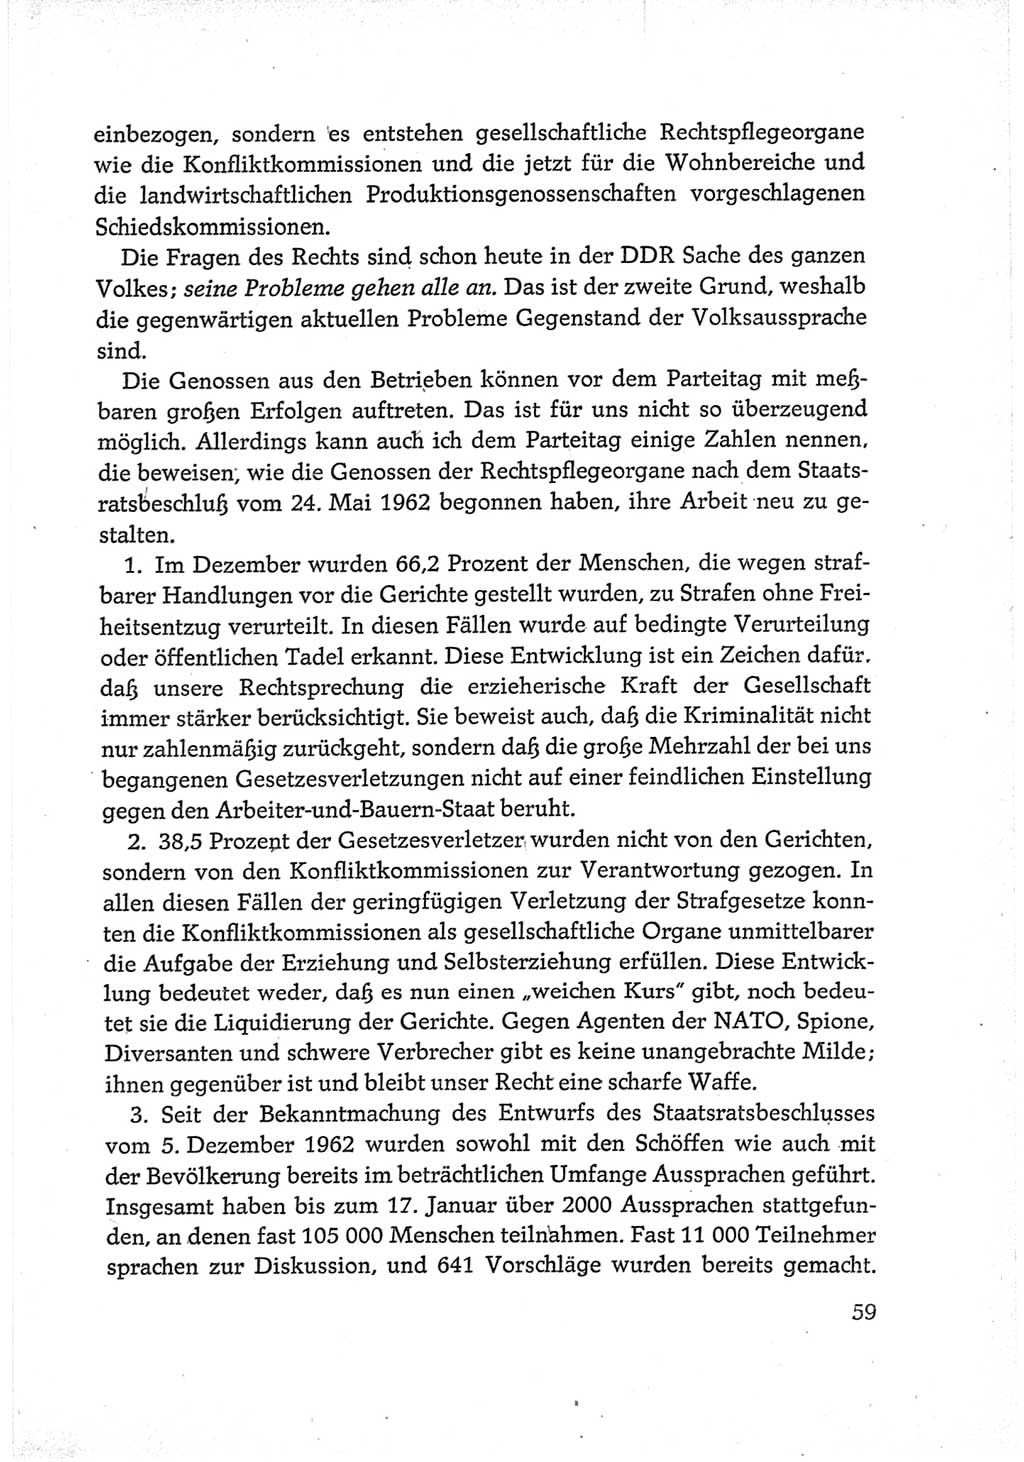 Protokoll der Verhandlungen des Ⅵ. Parteitages der Sozialistischen Einheitspartei Deutschlands (SED) [Deutsche Demokratische Republik (DDR)] 1963, Band Ⅲ, Seite 59 (Prot. Verh. Ⅵ. PT SED DDR 1963, Bd. Ⅲ, S. 59)